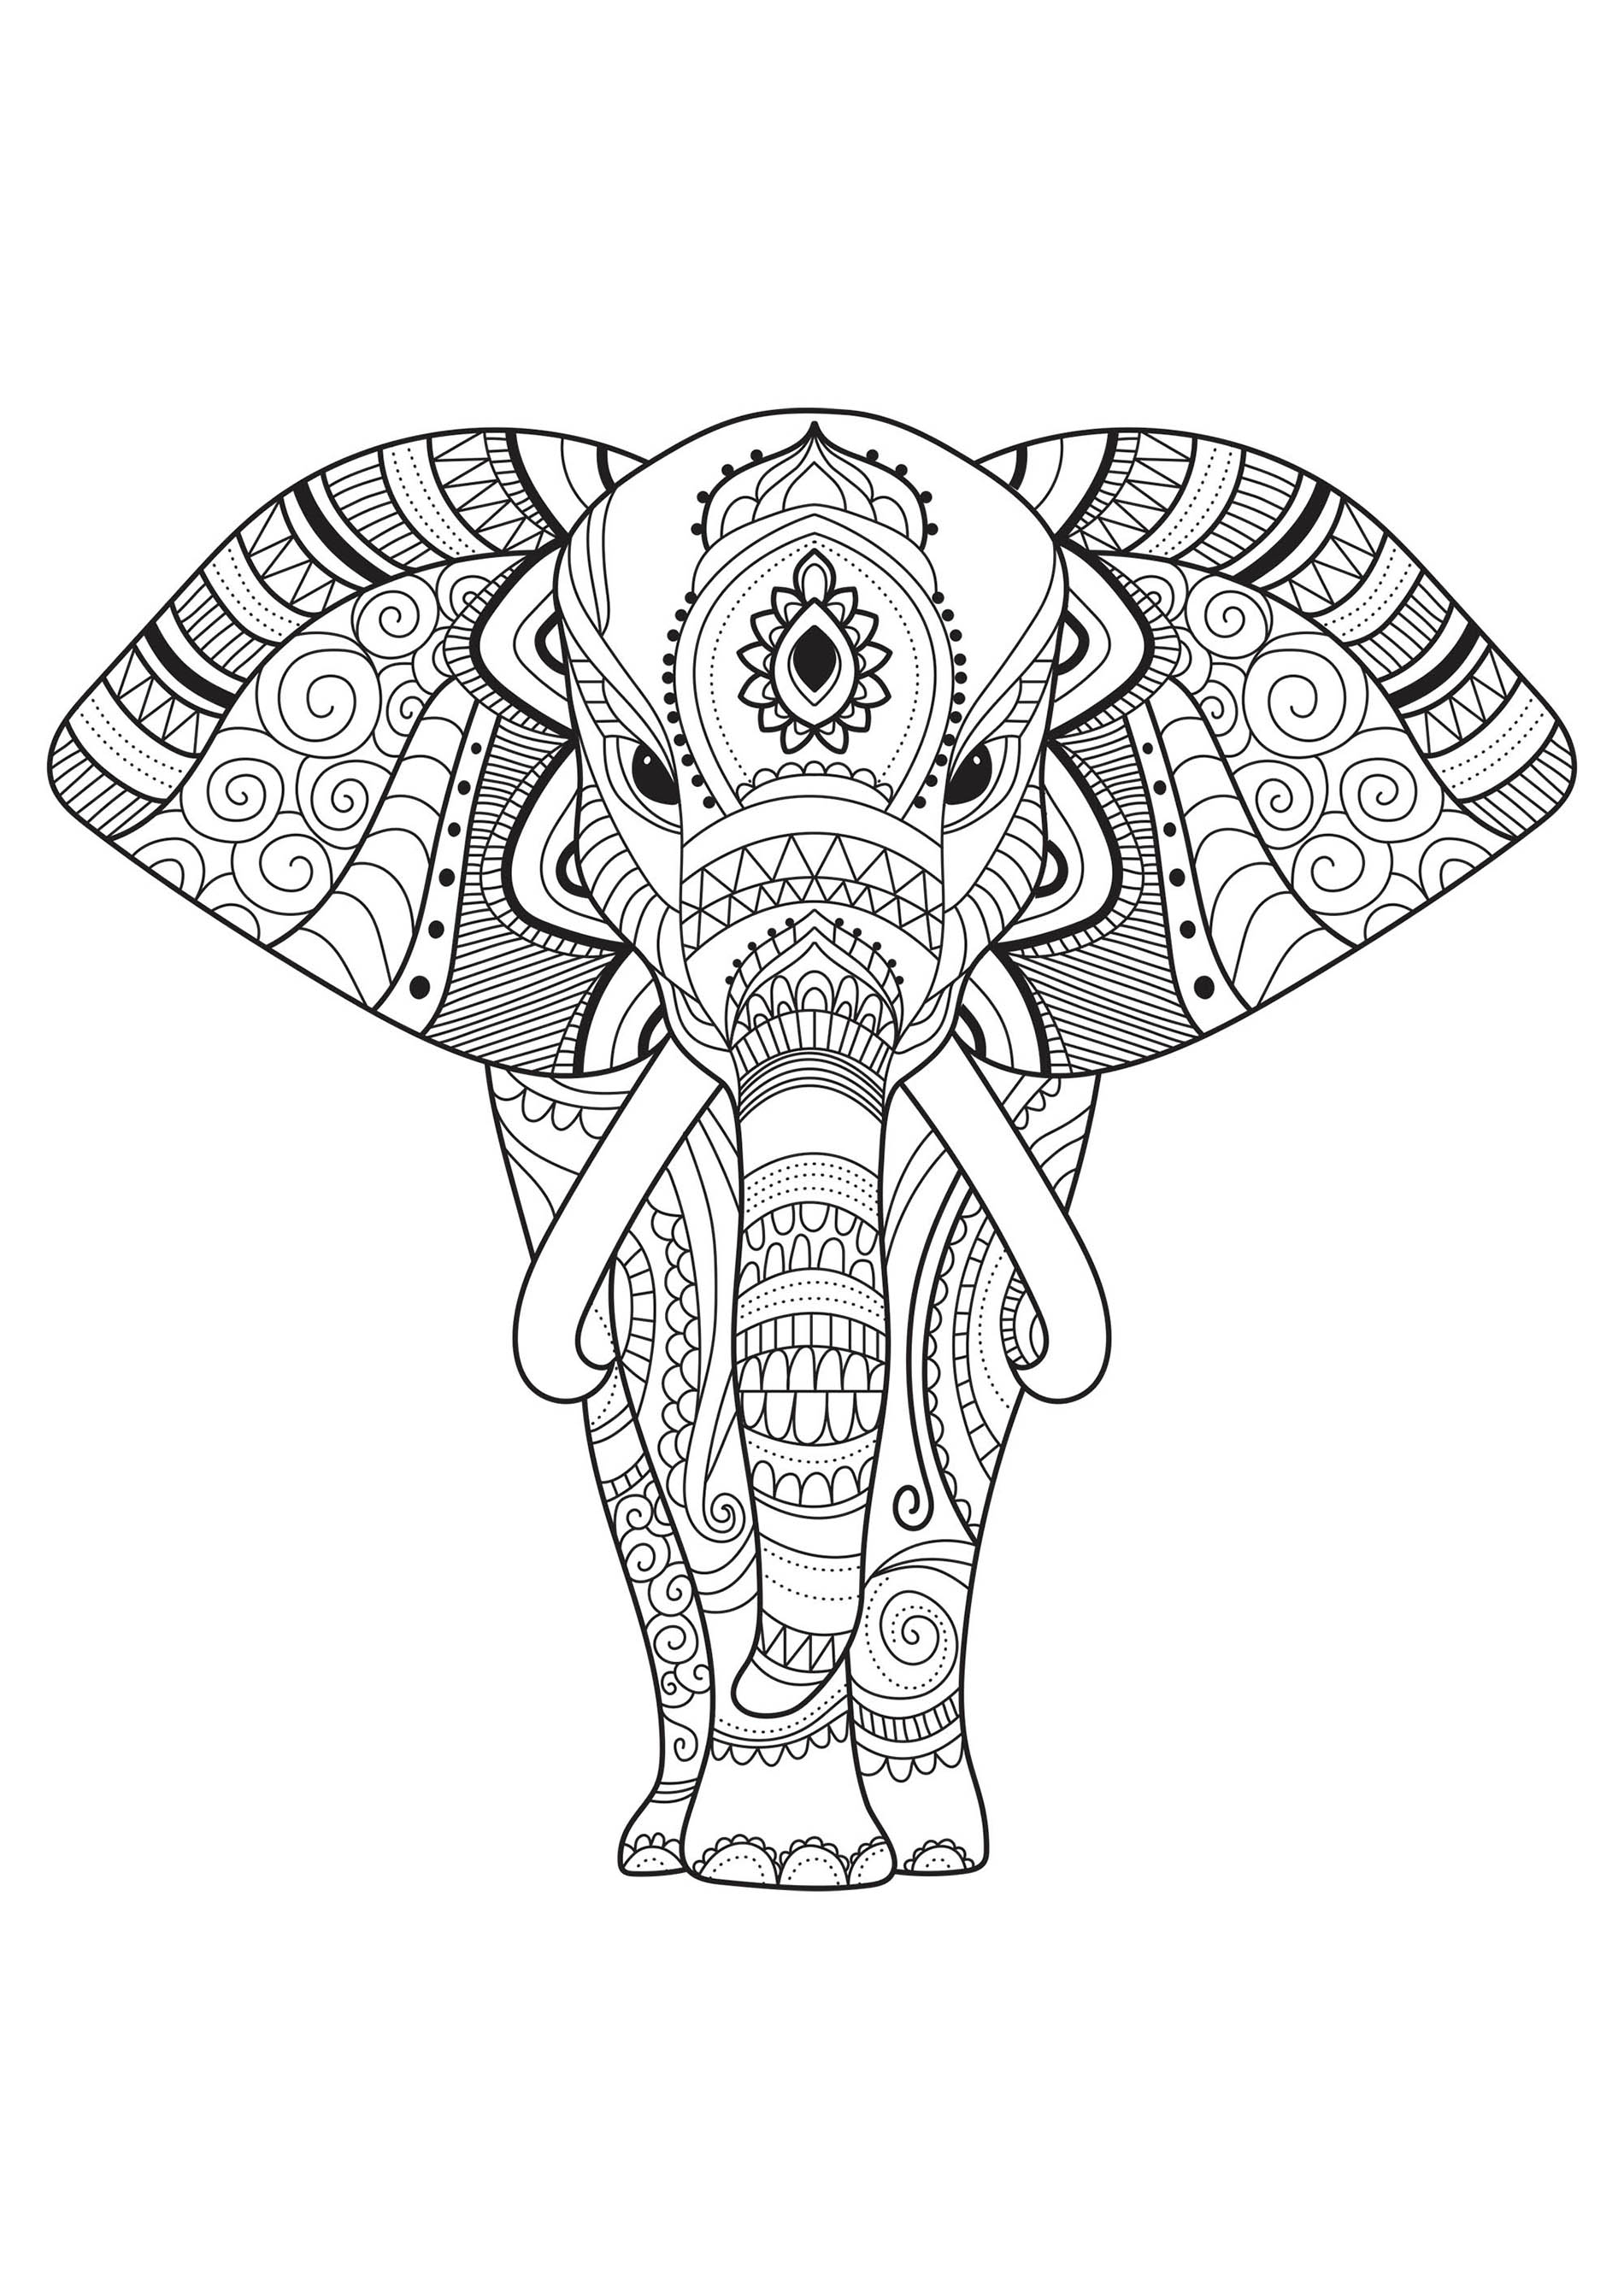 Colorir este elefante e os seus belos padrões